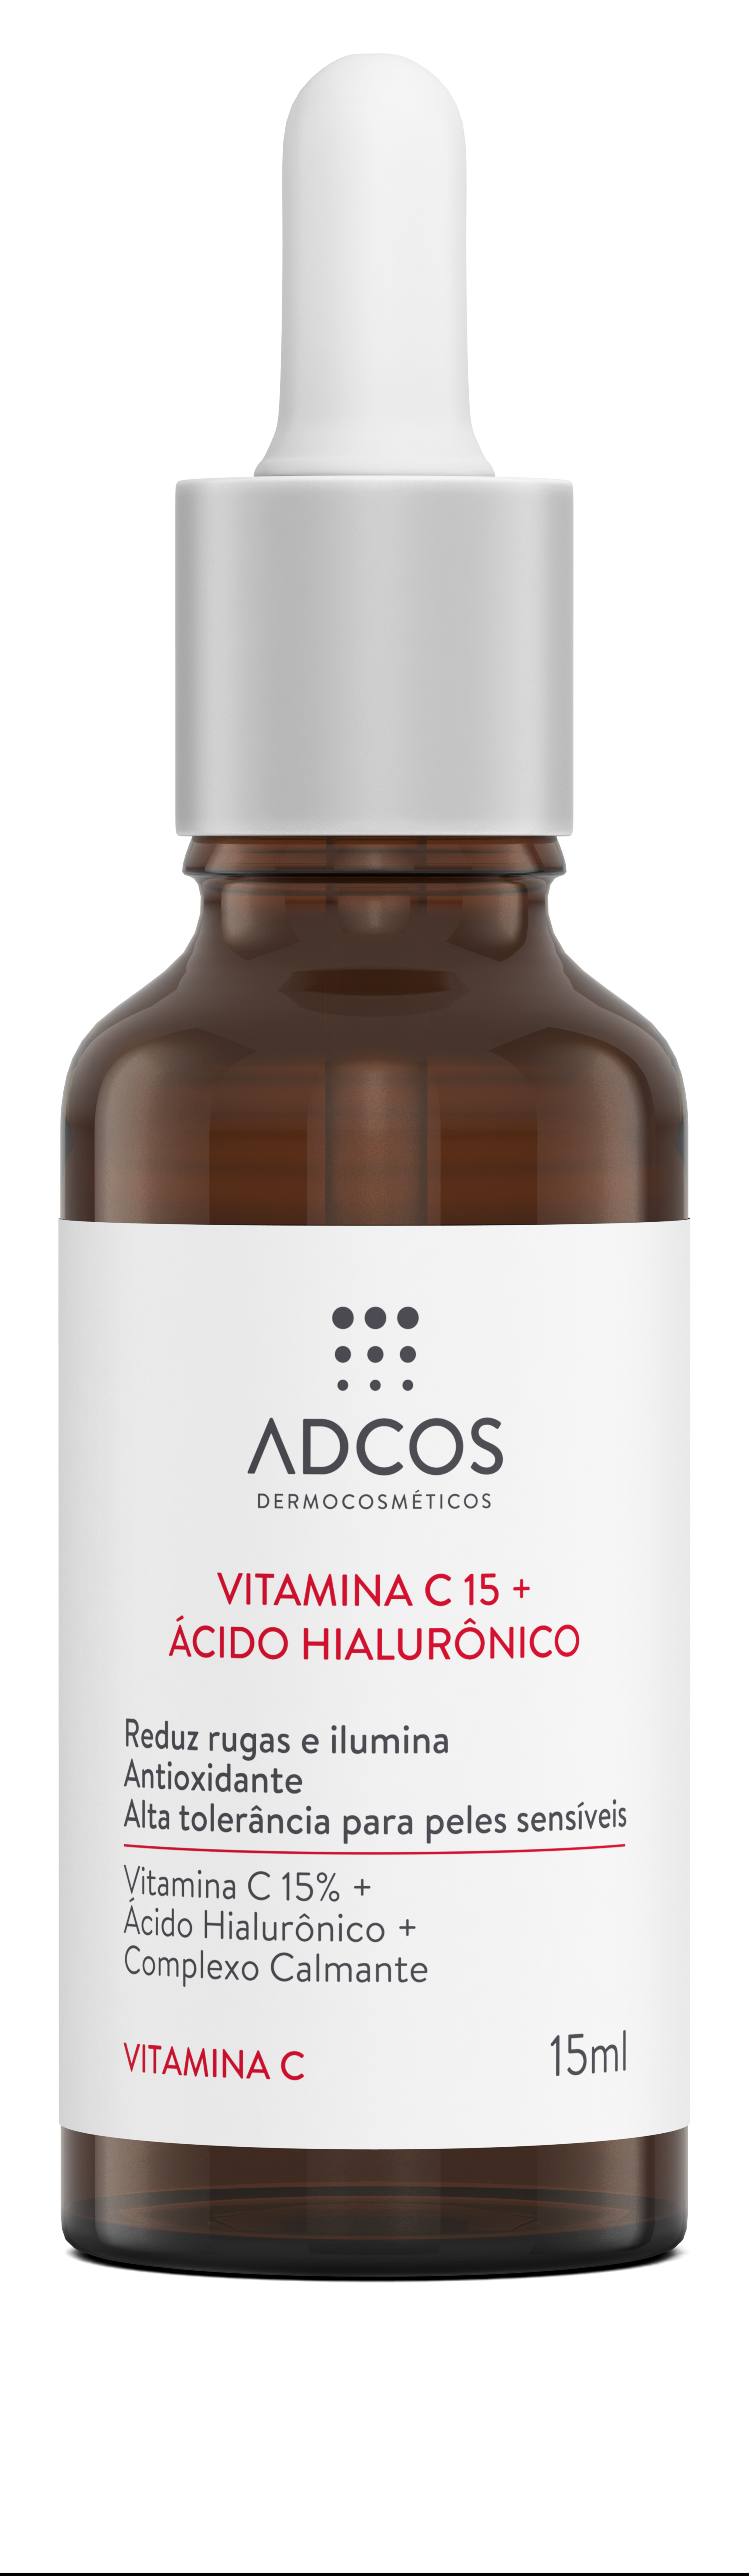 Vitamina C 15 + Ácido Hialurônico (R$ 135), Adcos (Foto: Divulgação)